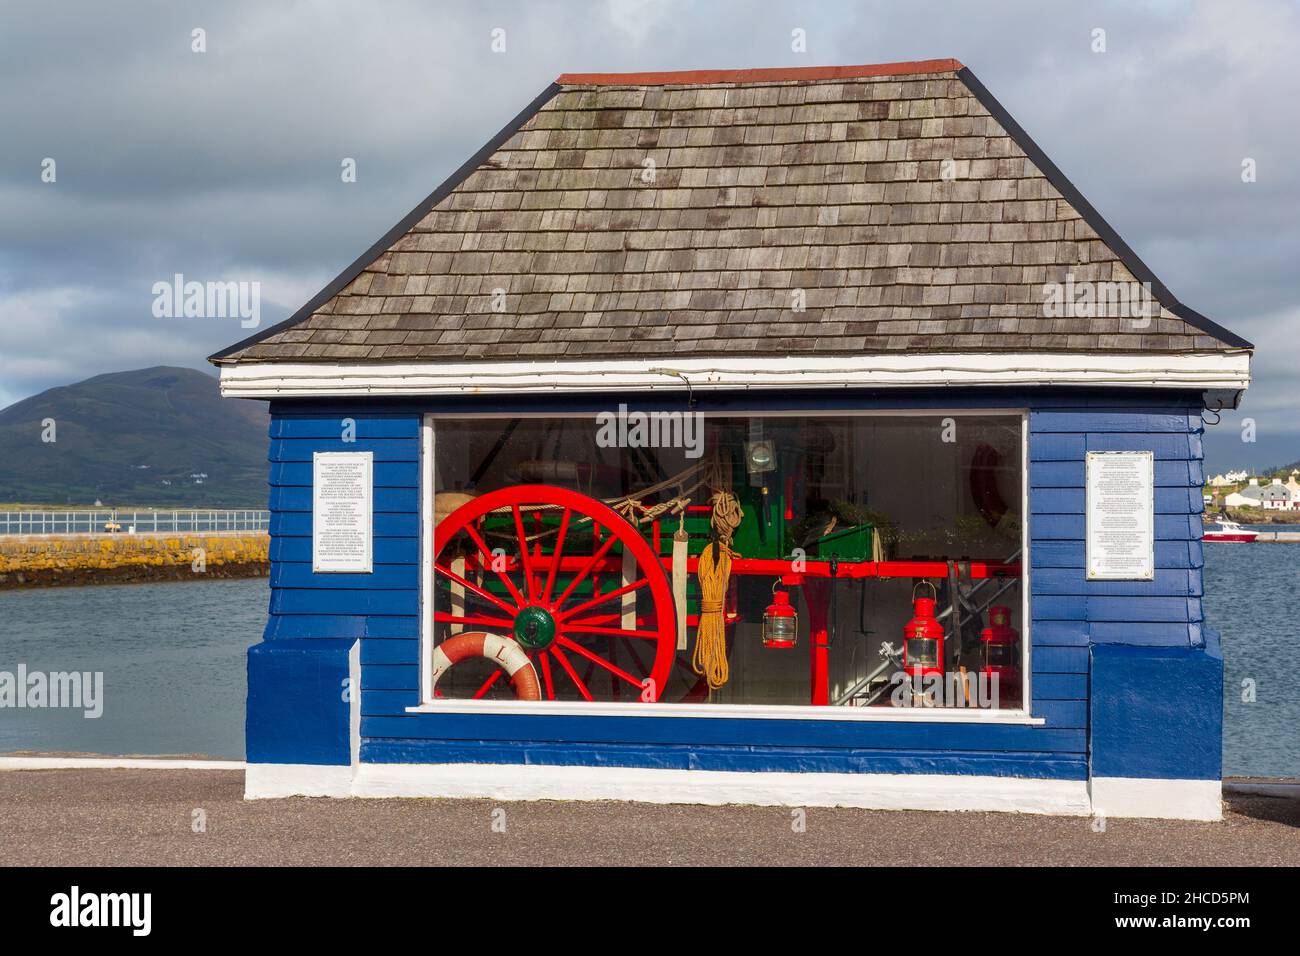 Exposición Cliff Rescue, Knightstown Village, Valentia Island, Condado de Kerry, Irlanda Foto de stock